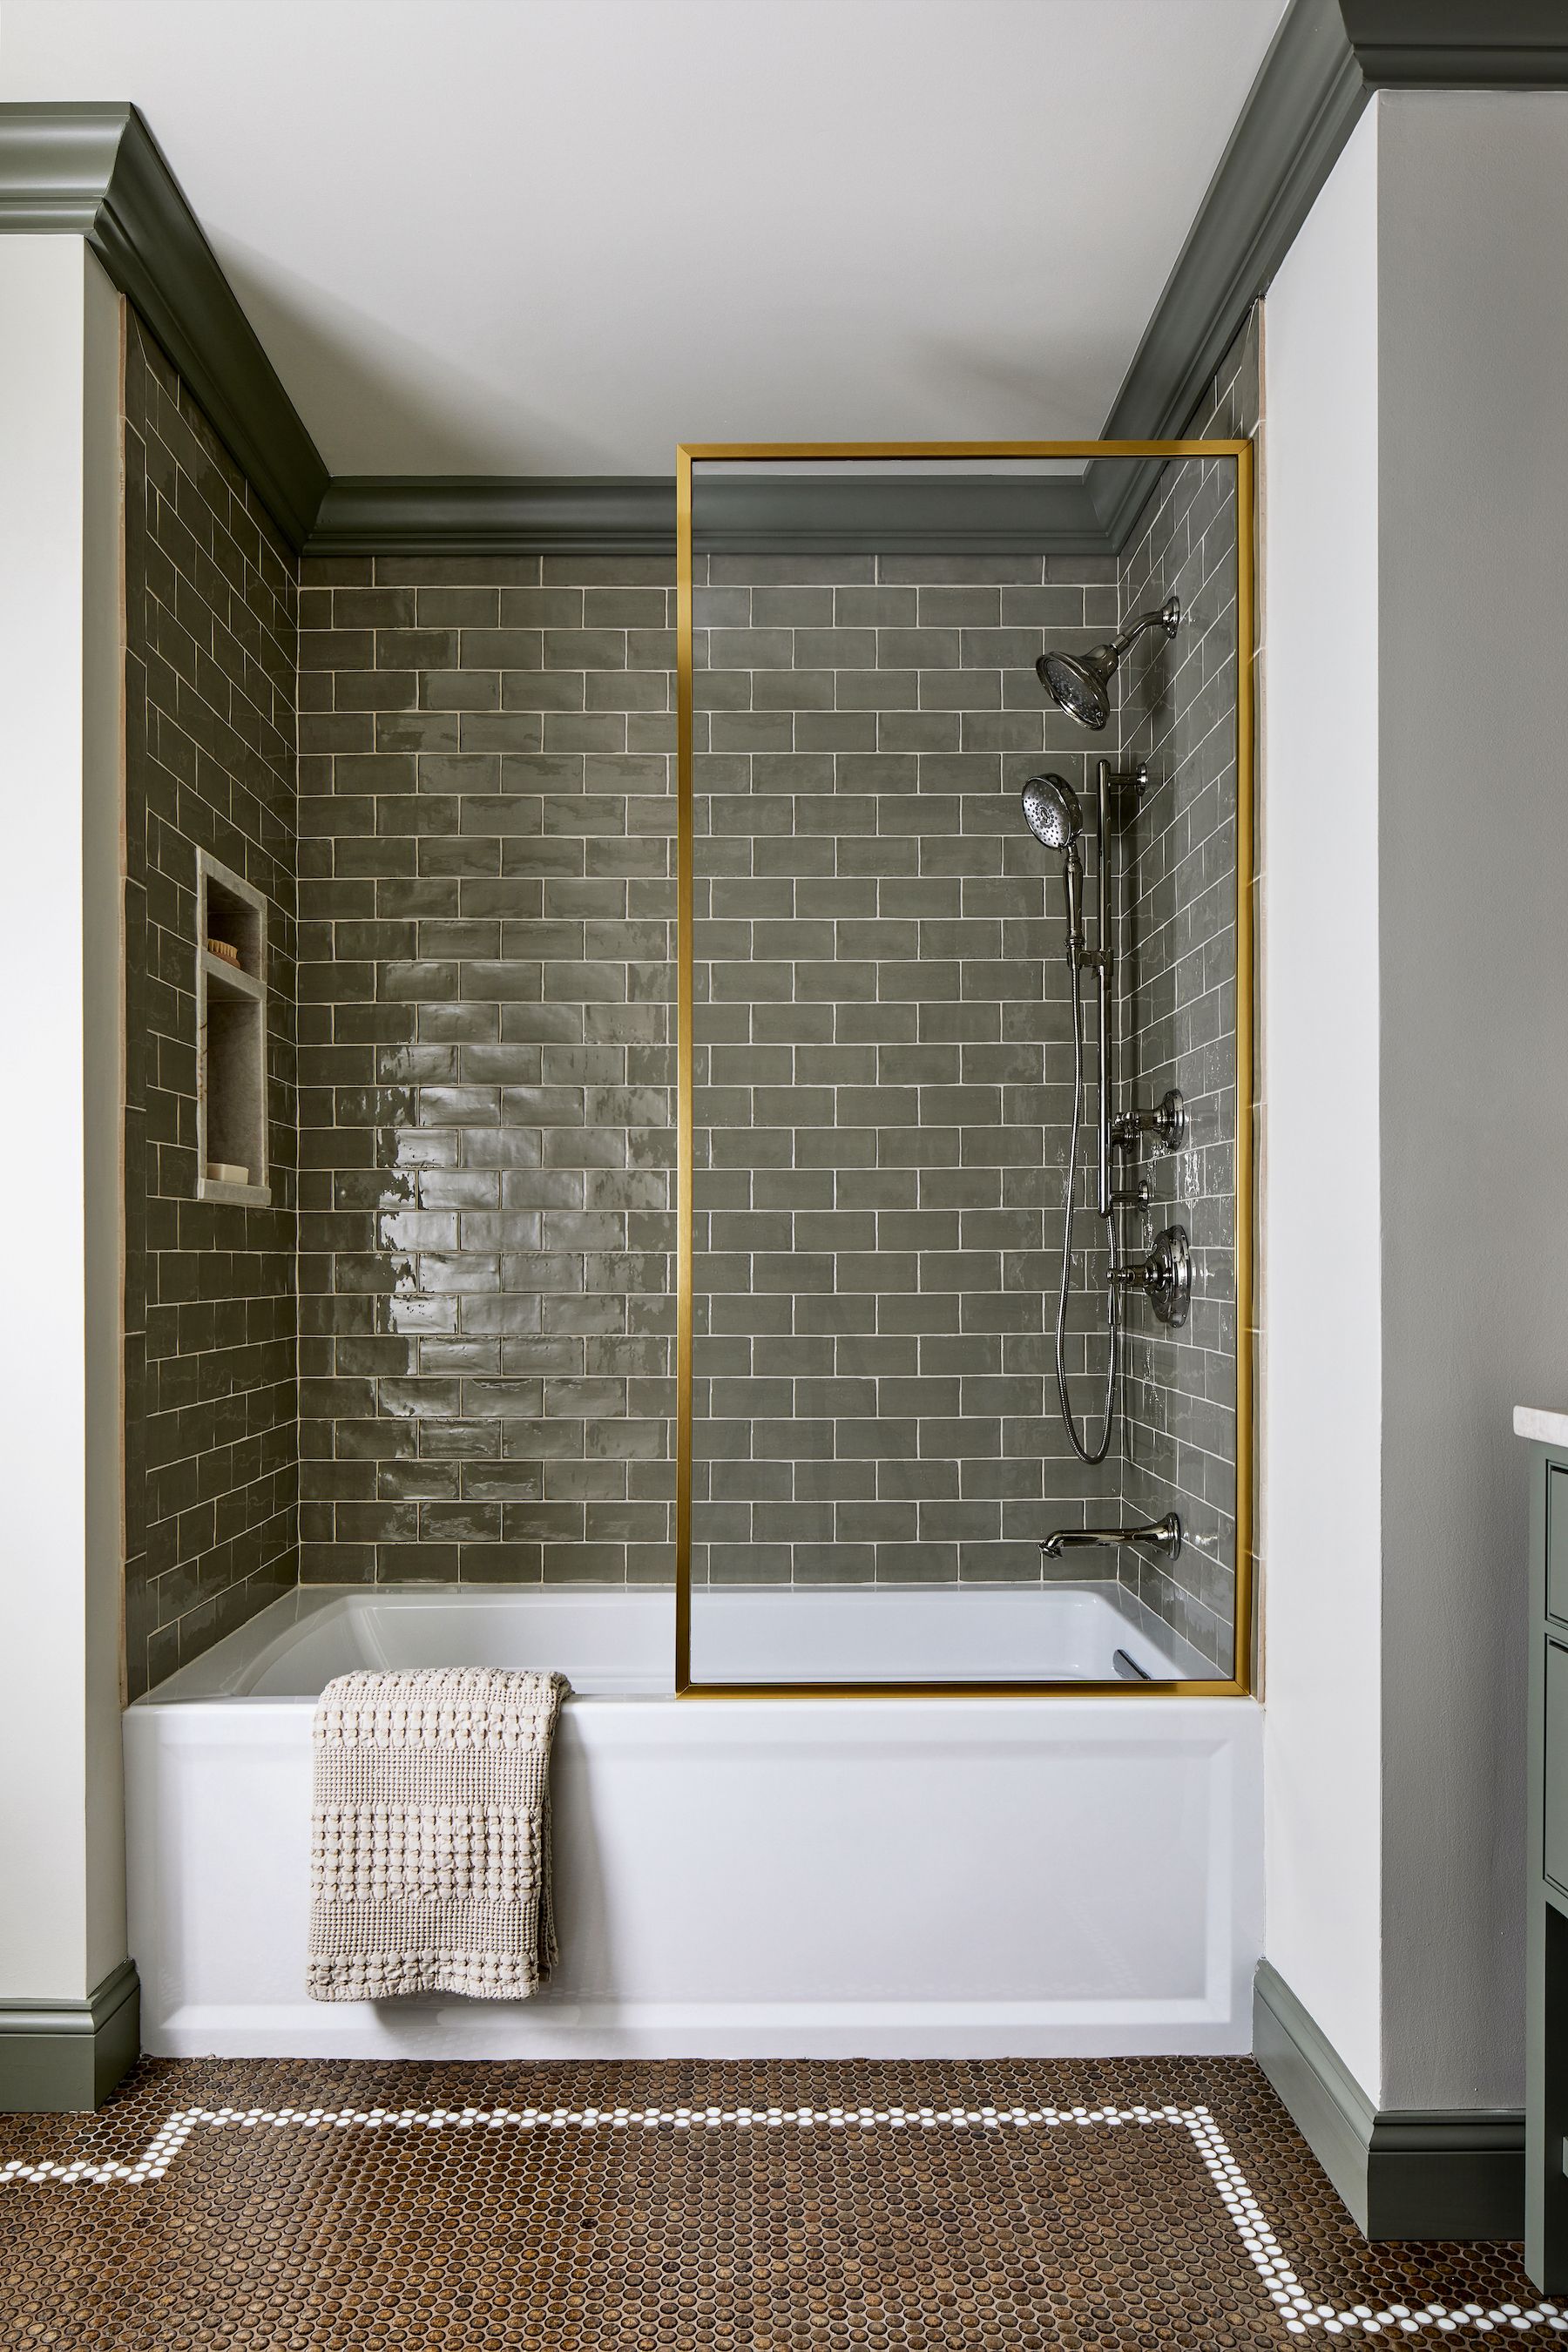 Bathroom Floor Tiles  The Best Ideas For 2021 + Beyond - Décor Aid